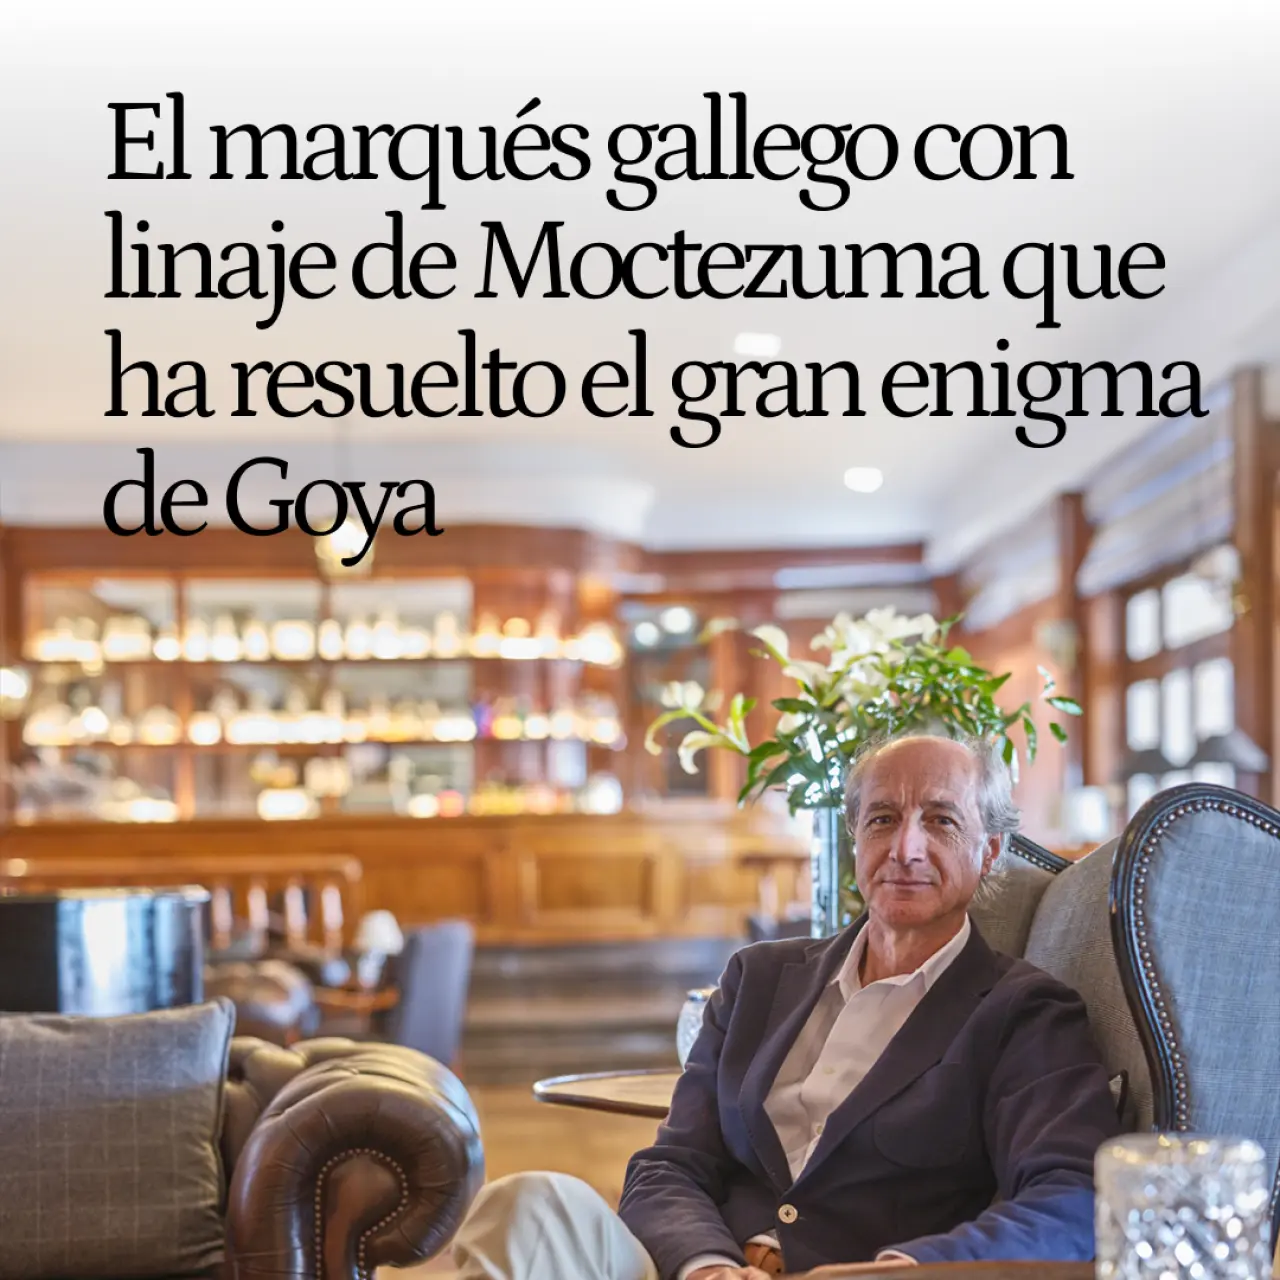 Ignacio Pérez-Blanco, el marqués gallego con linaje de Moctezuma que ha descifrado el gran enigma de Goya: "Era la princesa del Brasil"